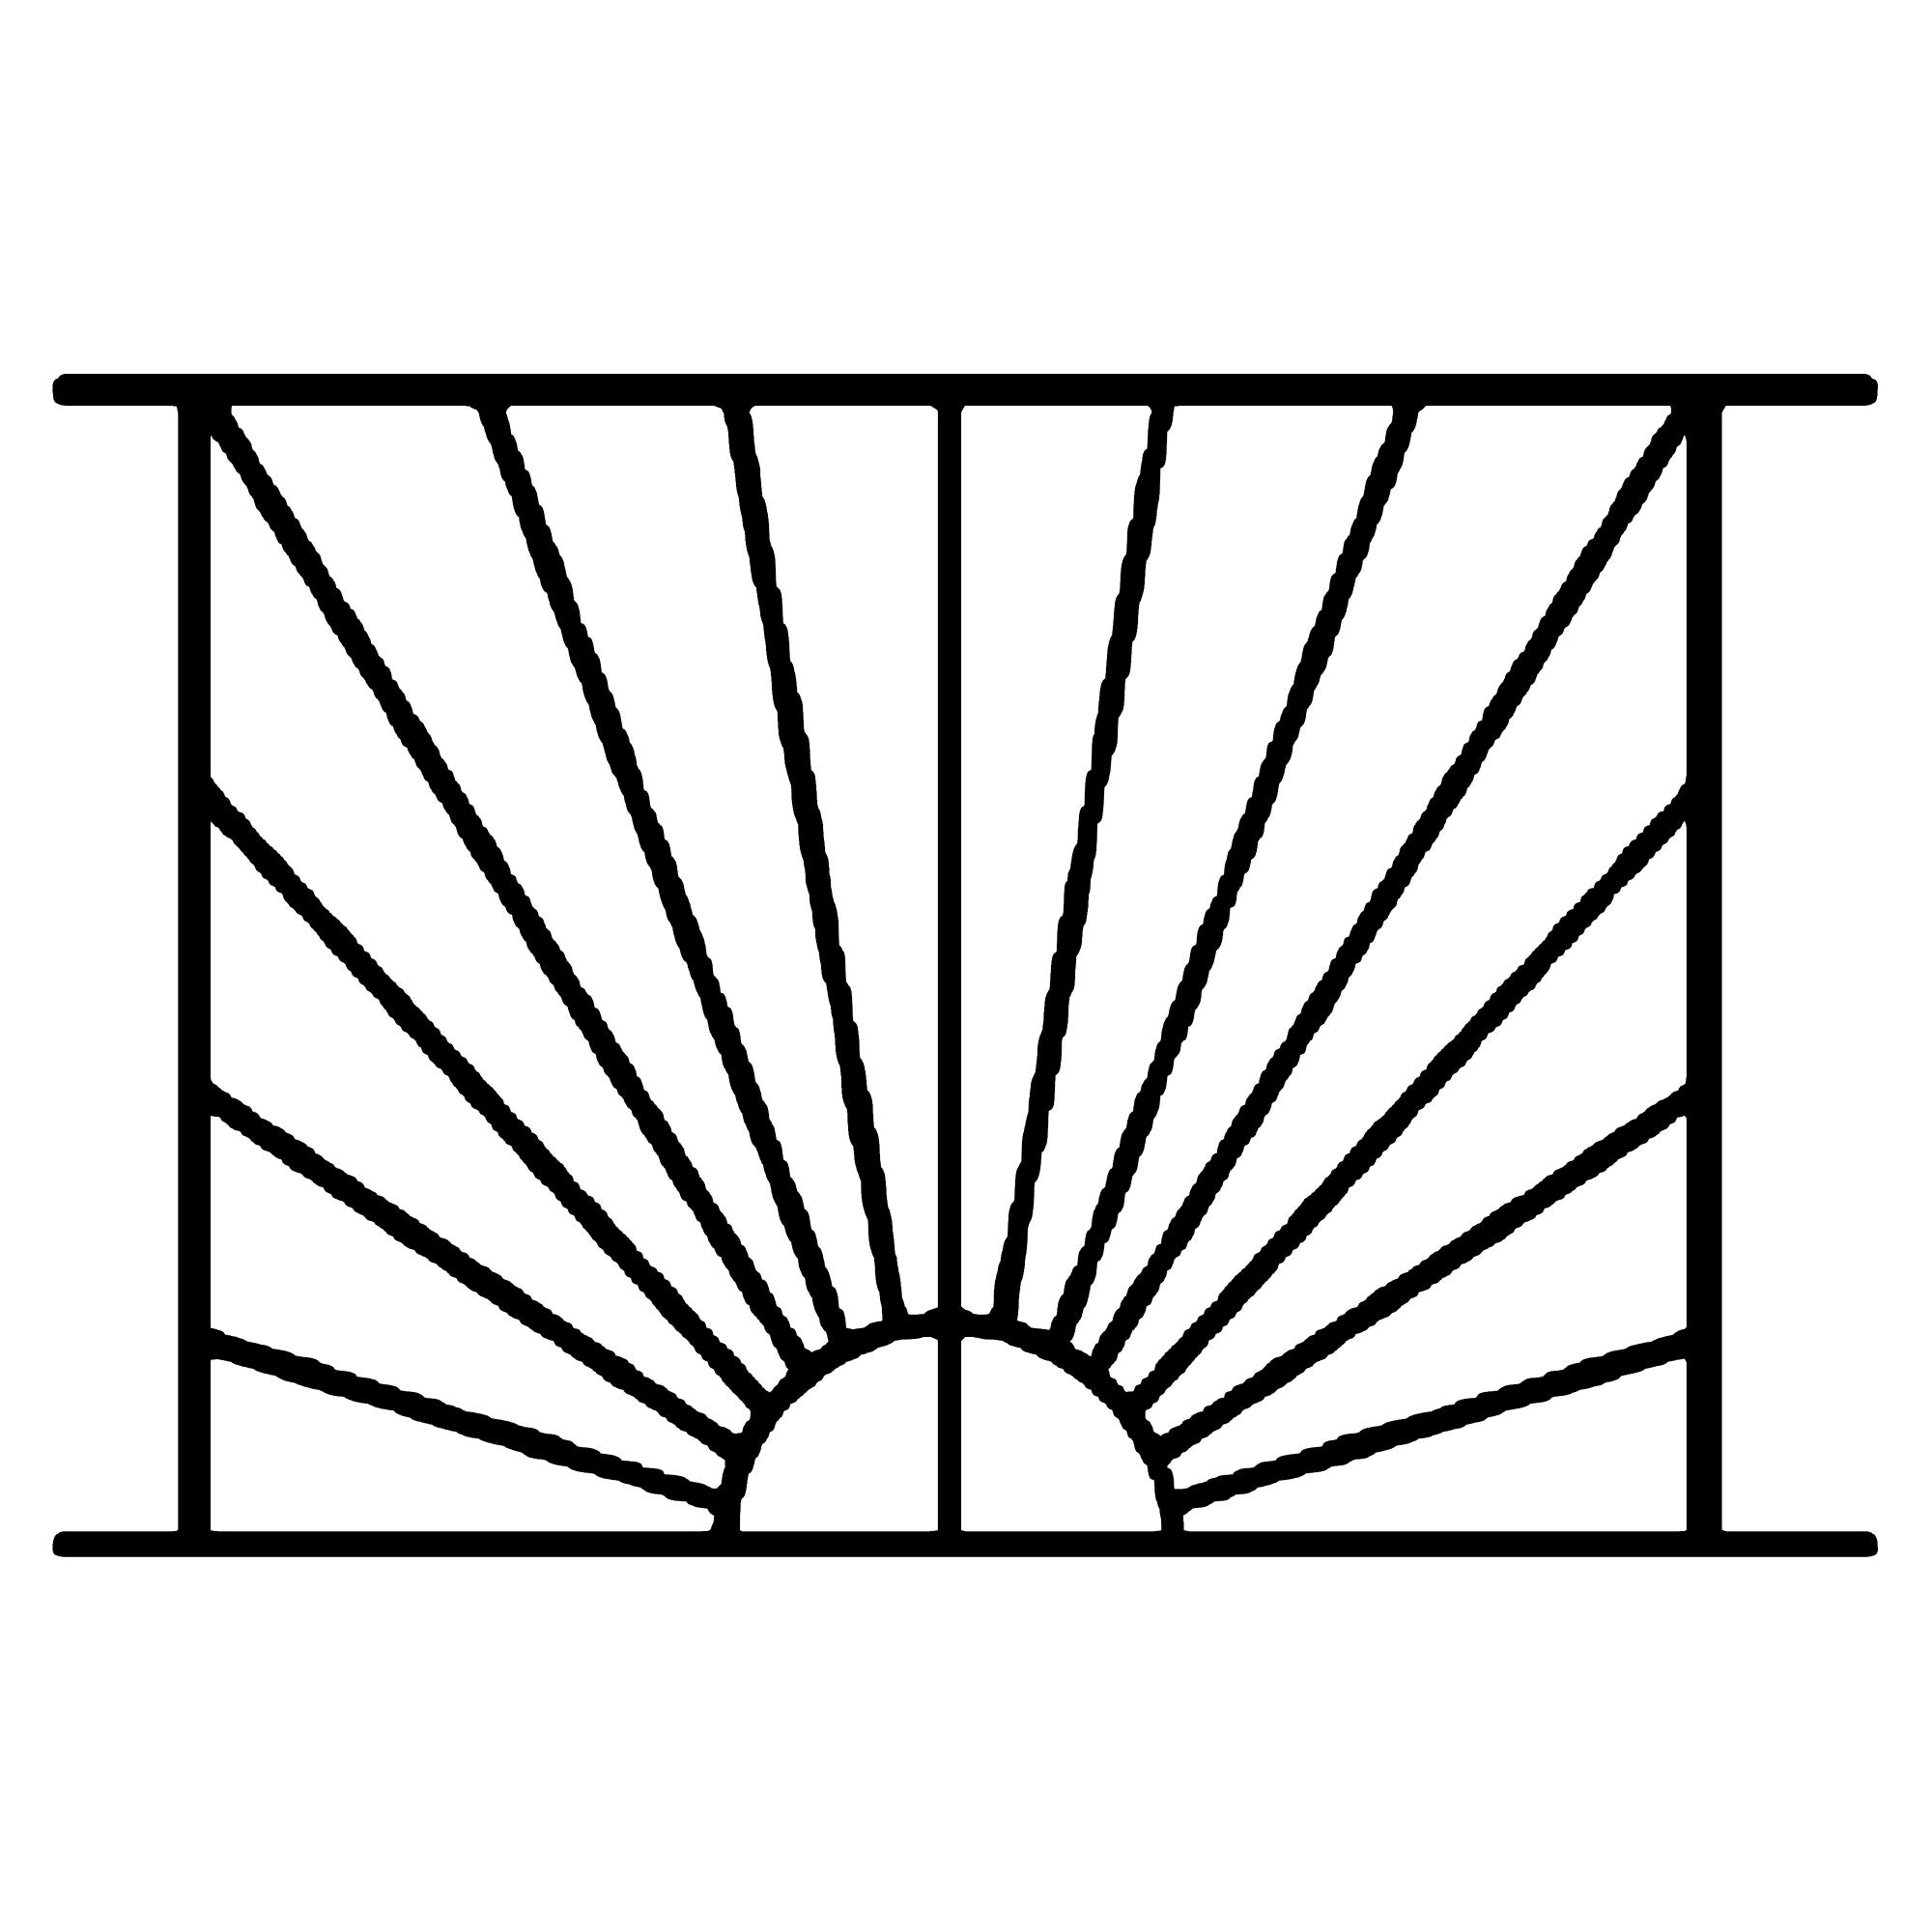 Grille de Defense Soleil pour Fenetre H= 45 cm x L= 120 cm (côte tableau) 1